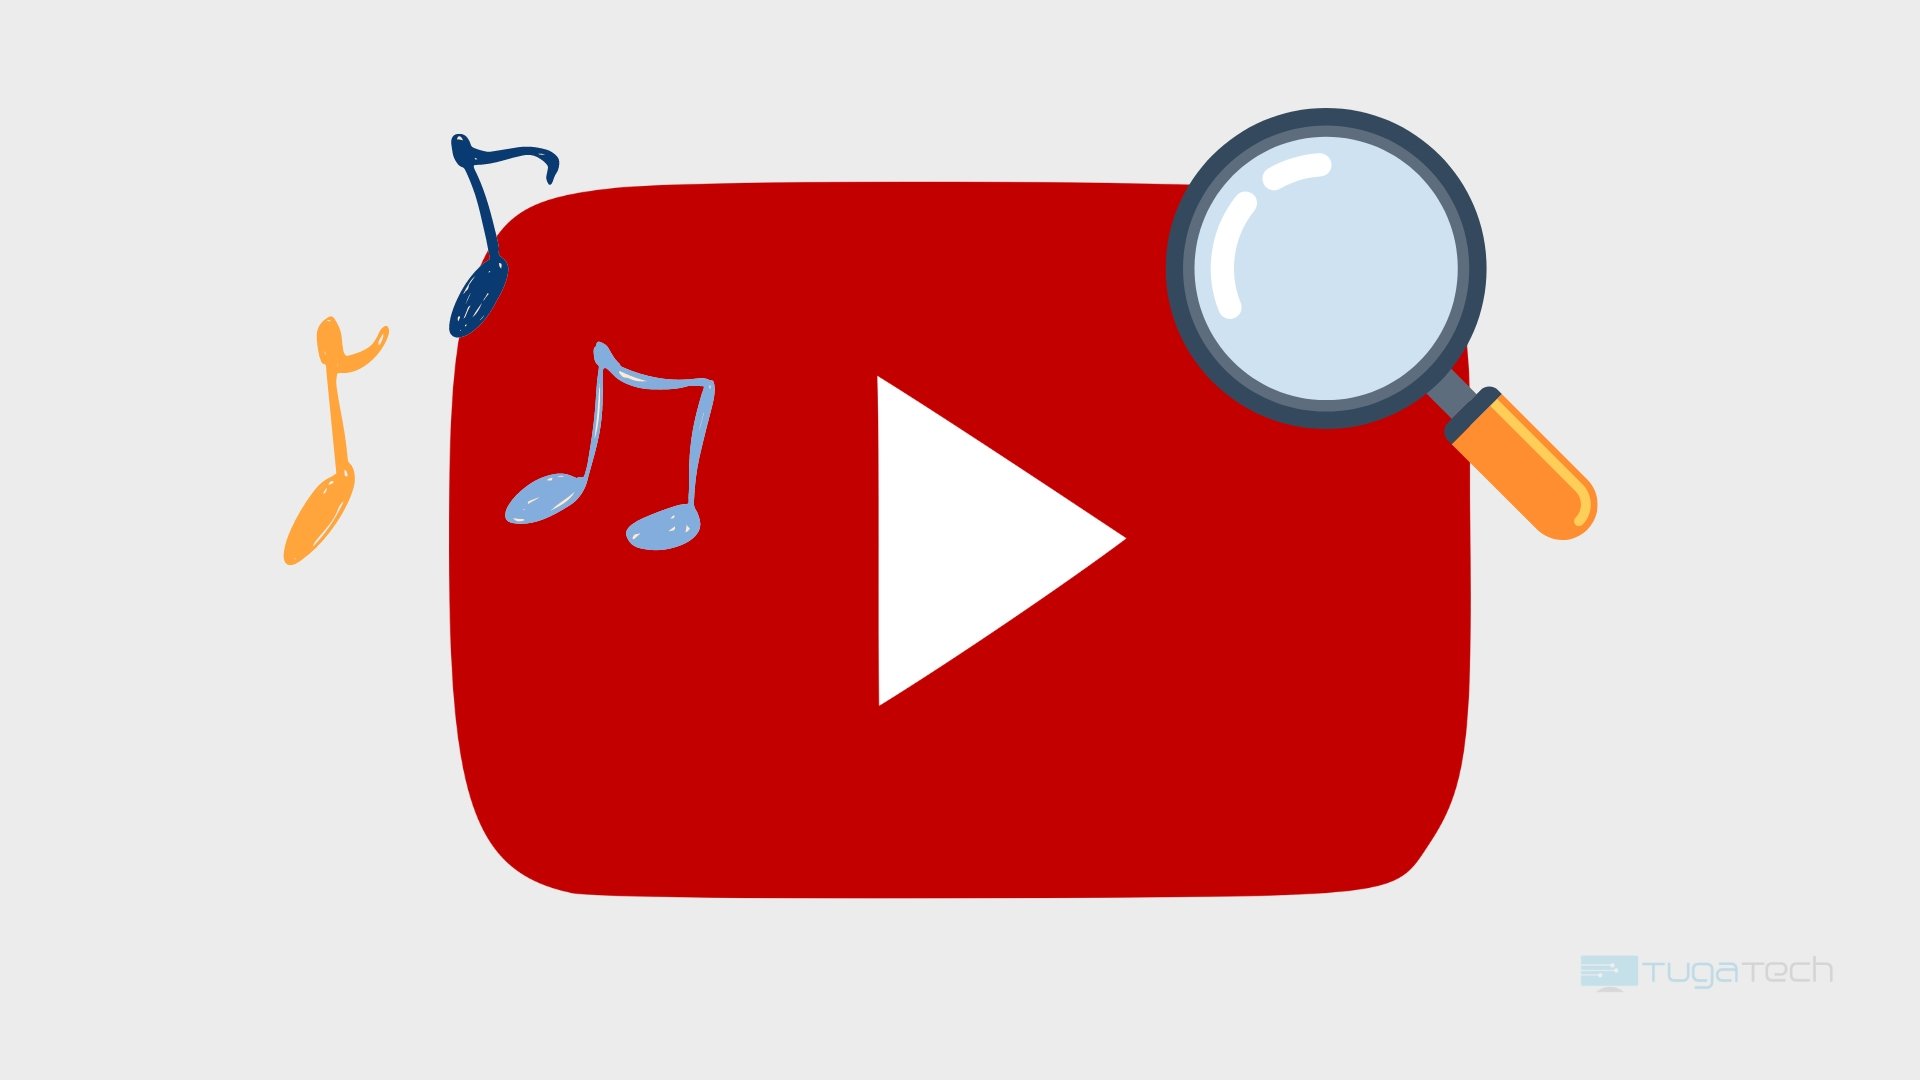 Logo do Youtube com pesquisa e música